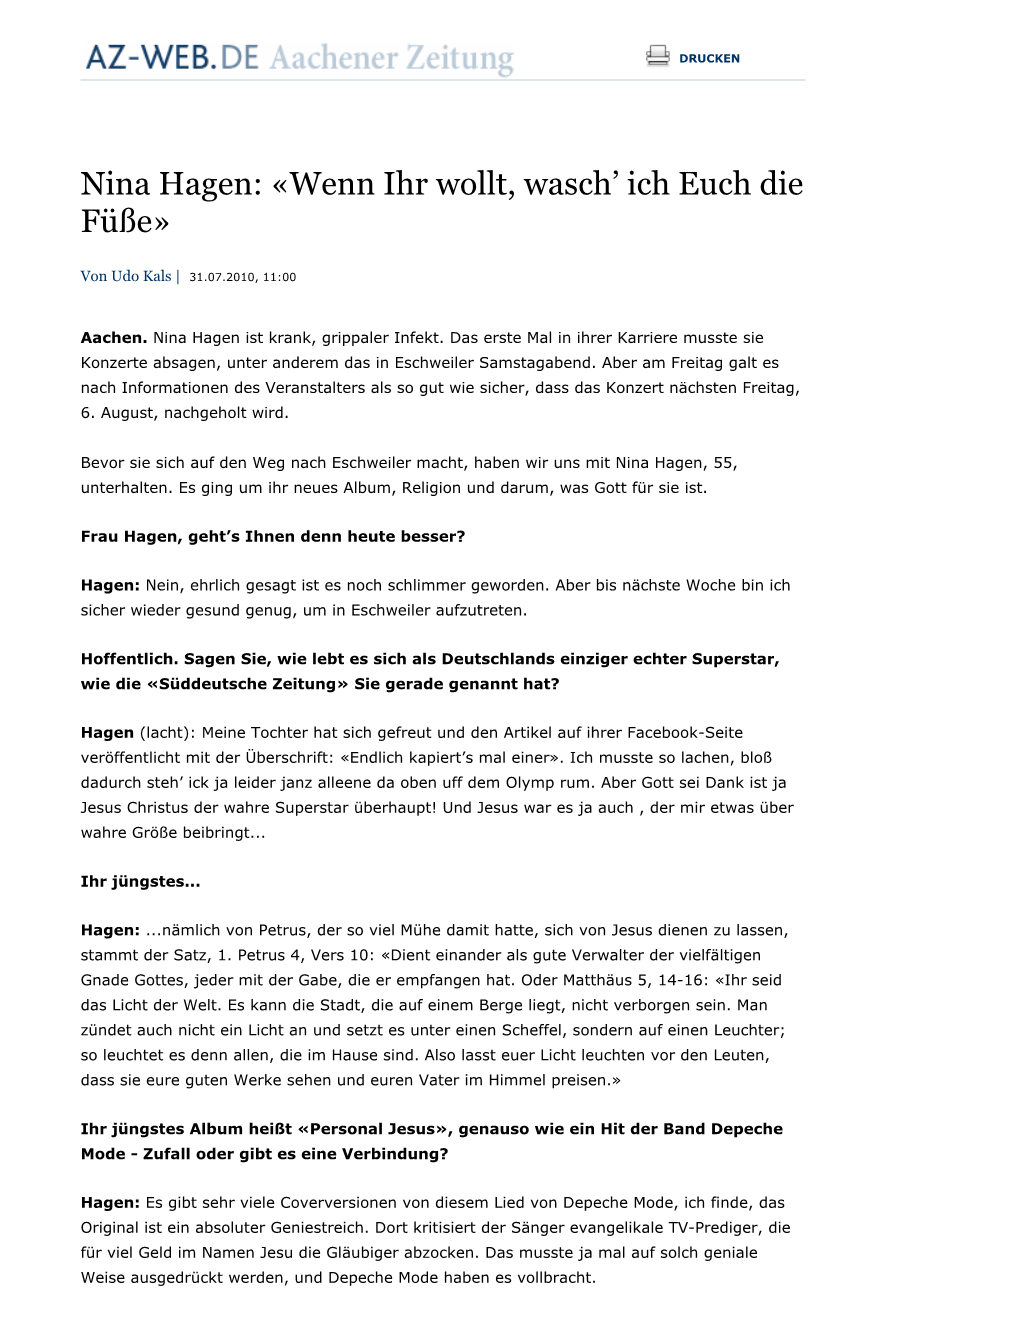 Nina Hagen: «Wenn Ihr Wollt, Wasch' Ich Euch Die Füße»